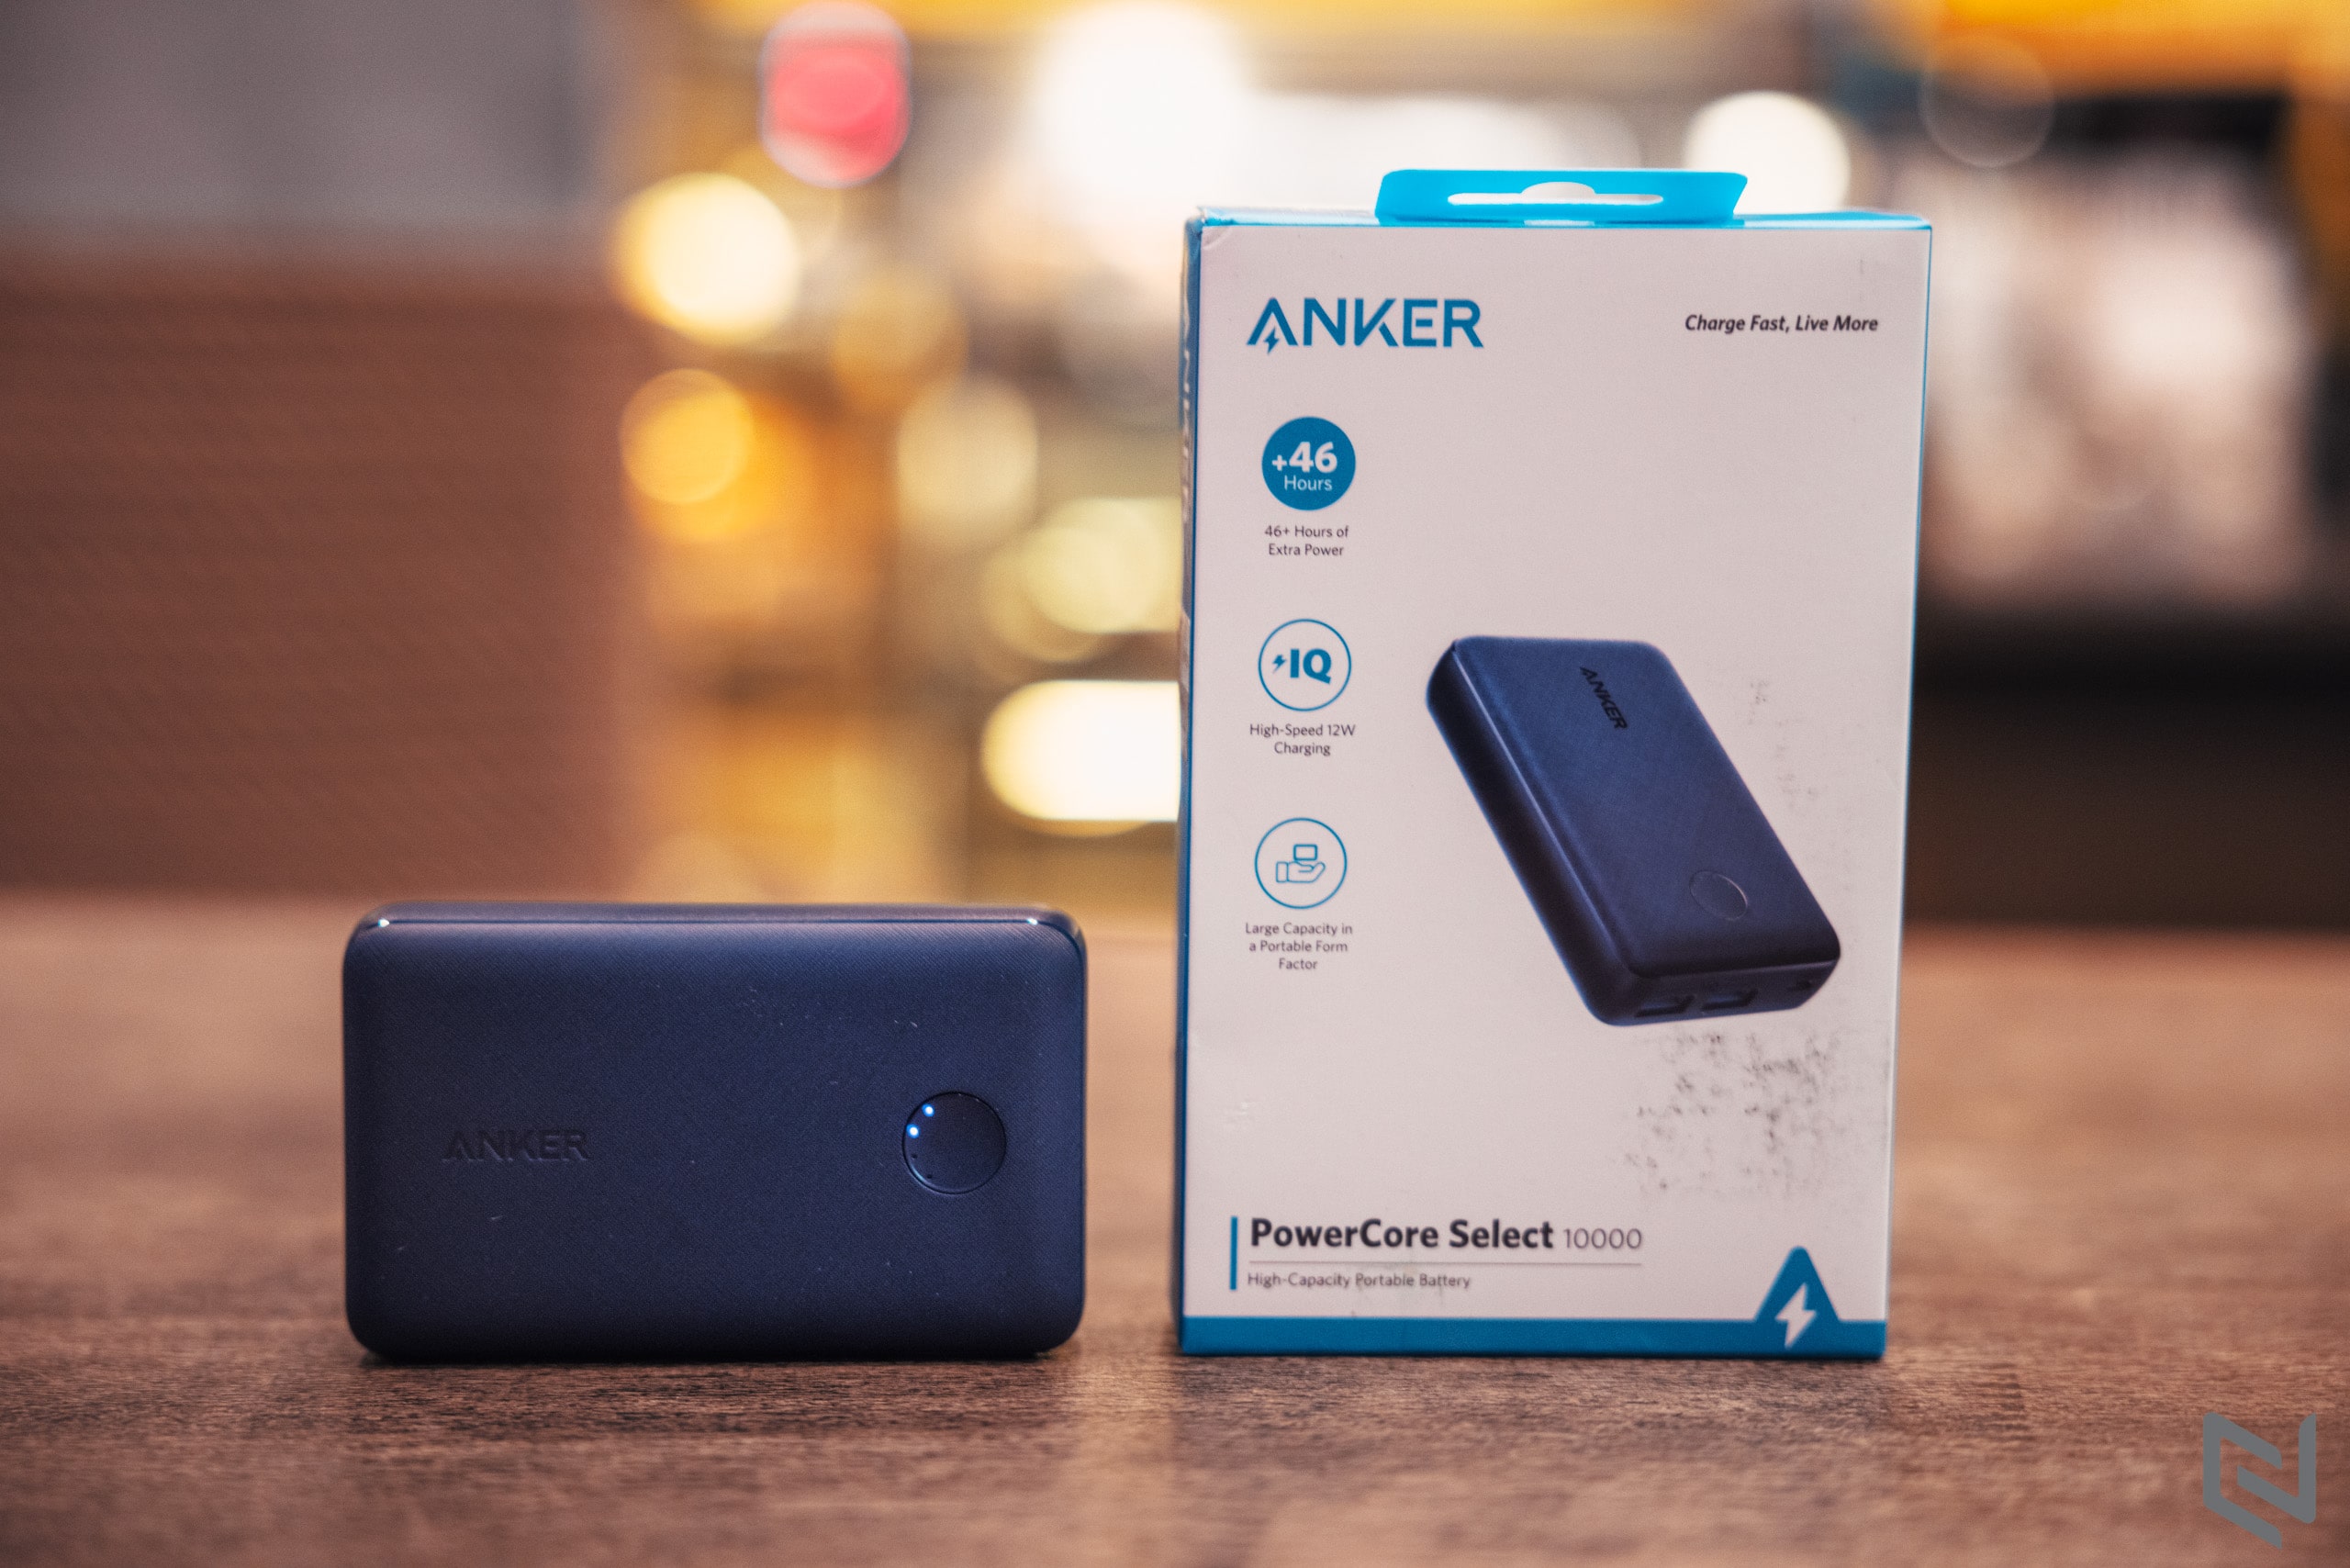 Sở hữu pin sạc dự phòng Anker PowerCore Select 10000 màu xanh độc quyền Shopee với mức giá chỉ 399,000 VND